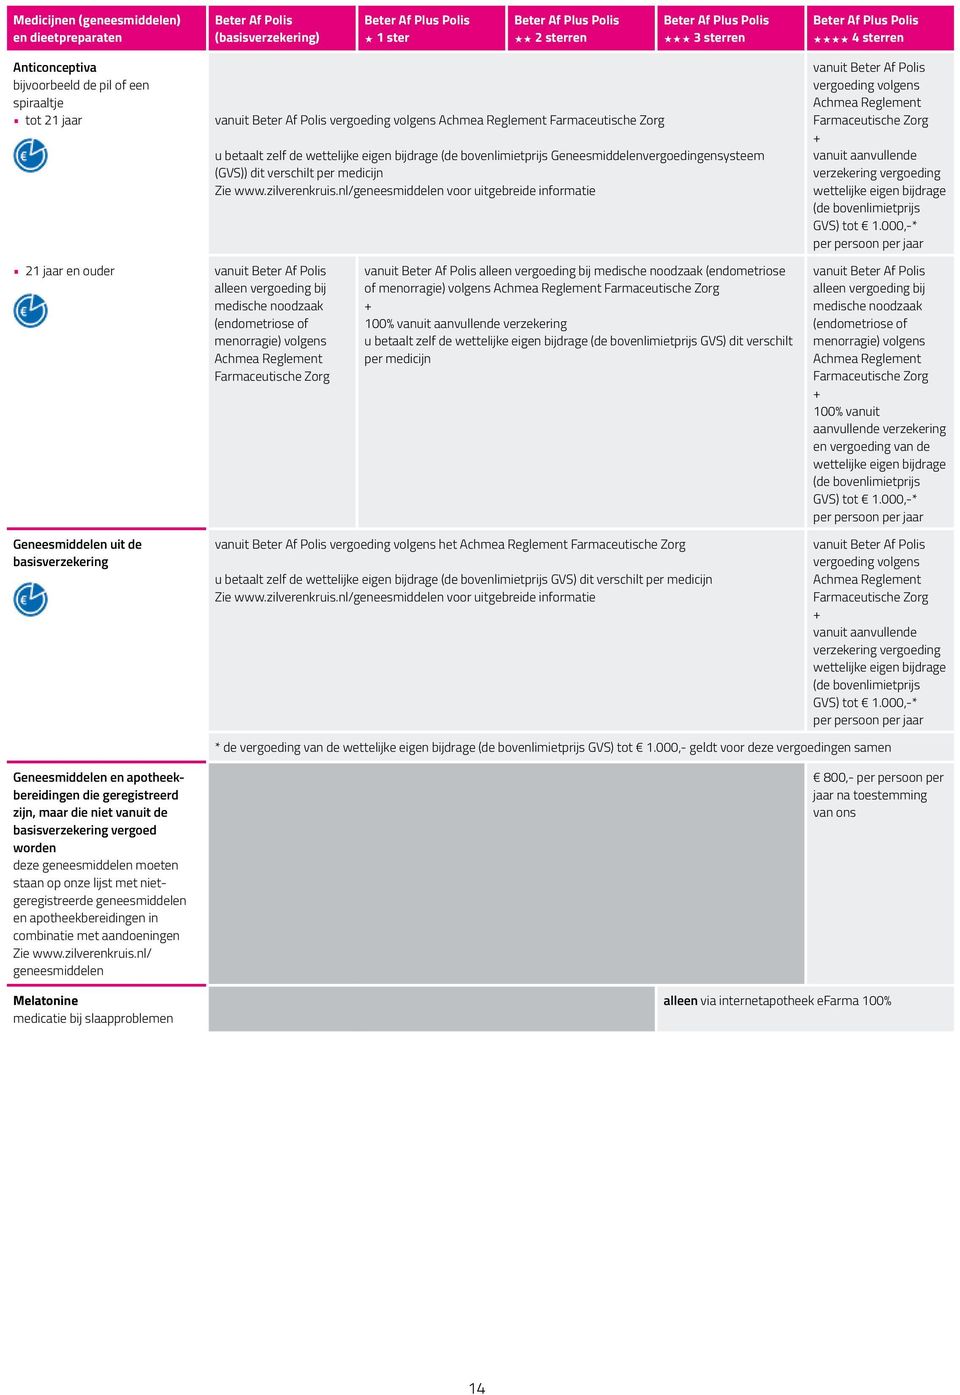 nl/geneesmiddelen voor uitgebreide informatie vanuit vergoeding volgens Achmea Reglement Farmaceutische Zorg vanuit aanvullende verzekering vergoeding wettelijke eigen bijdrage (de bovenlimietprijs